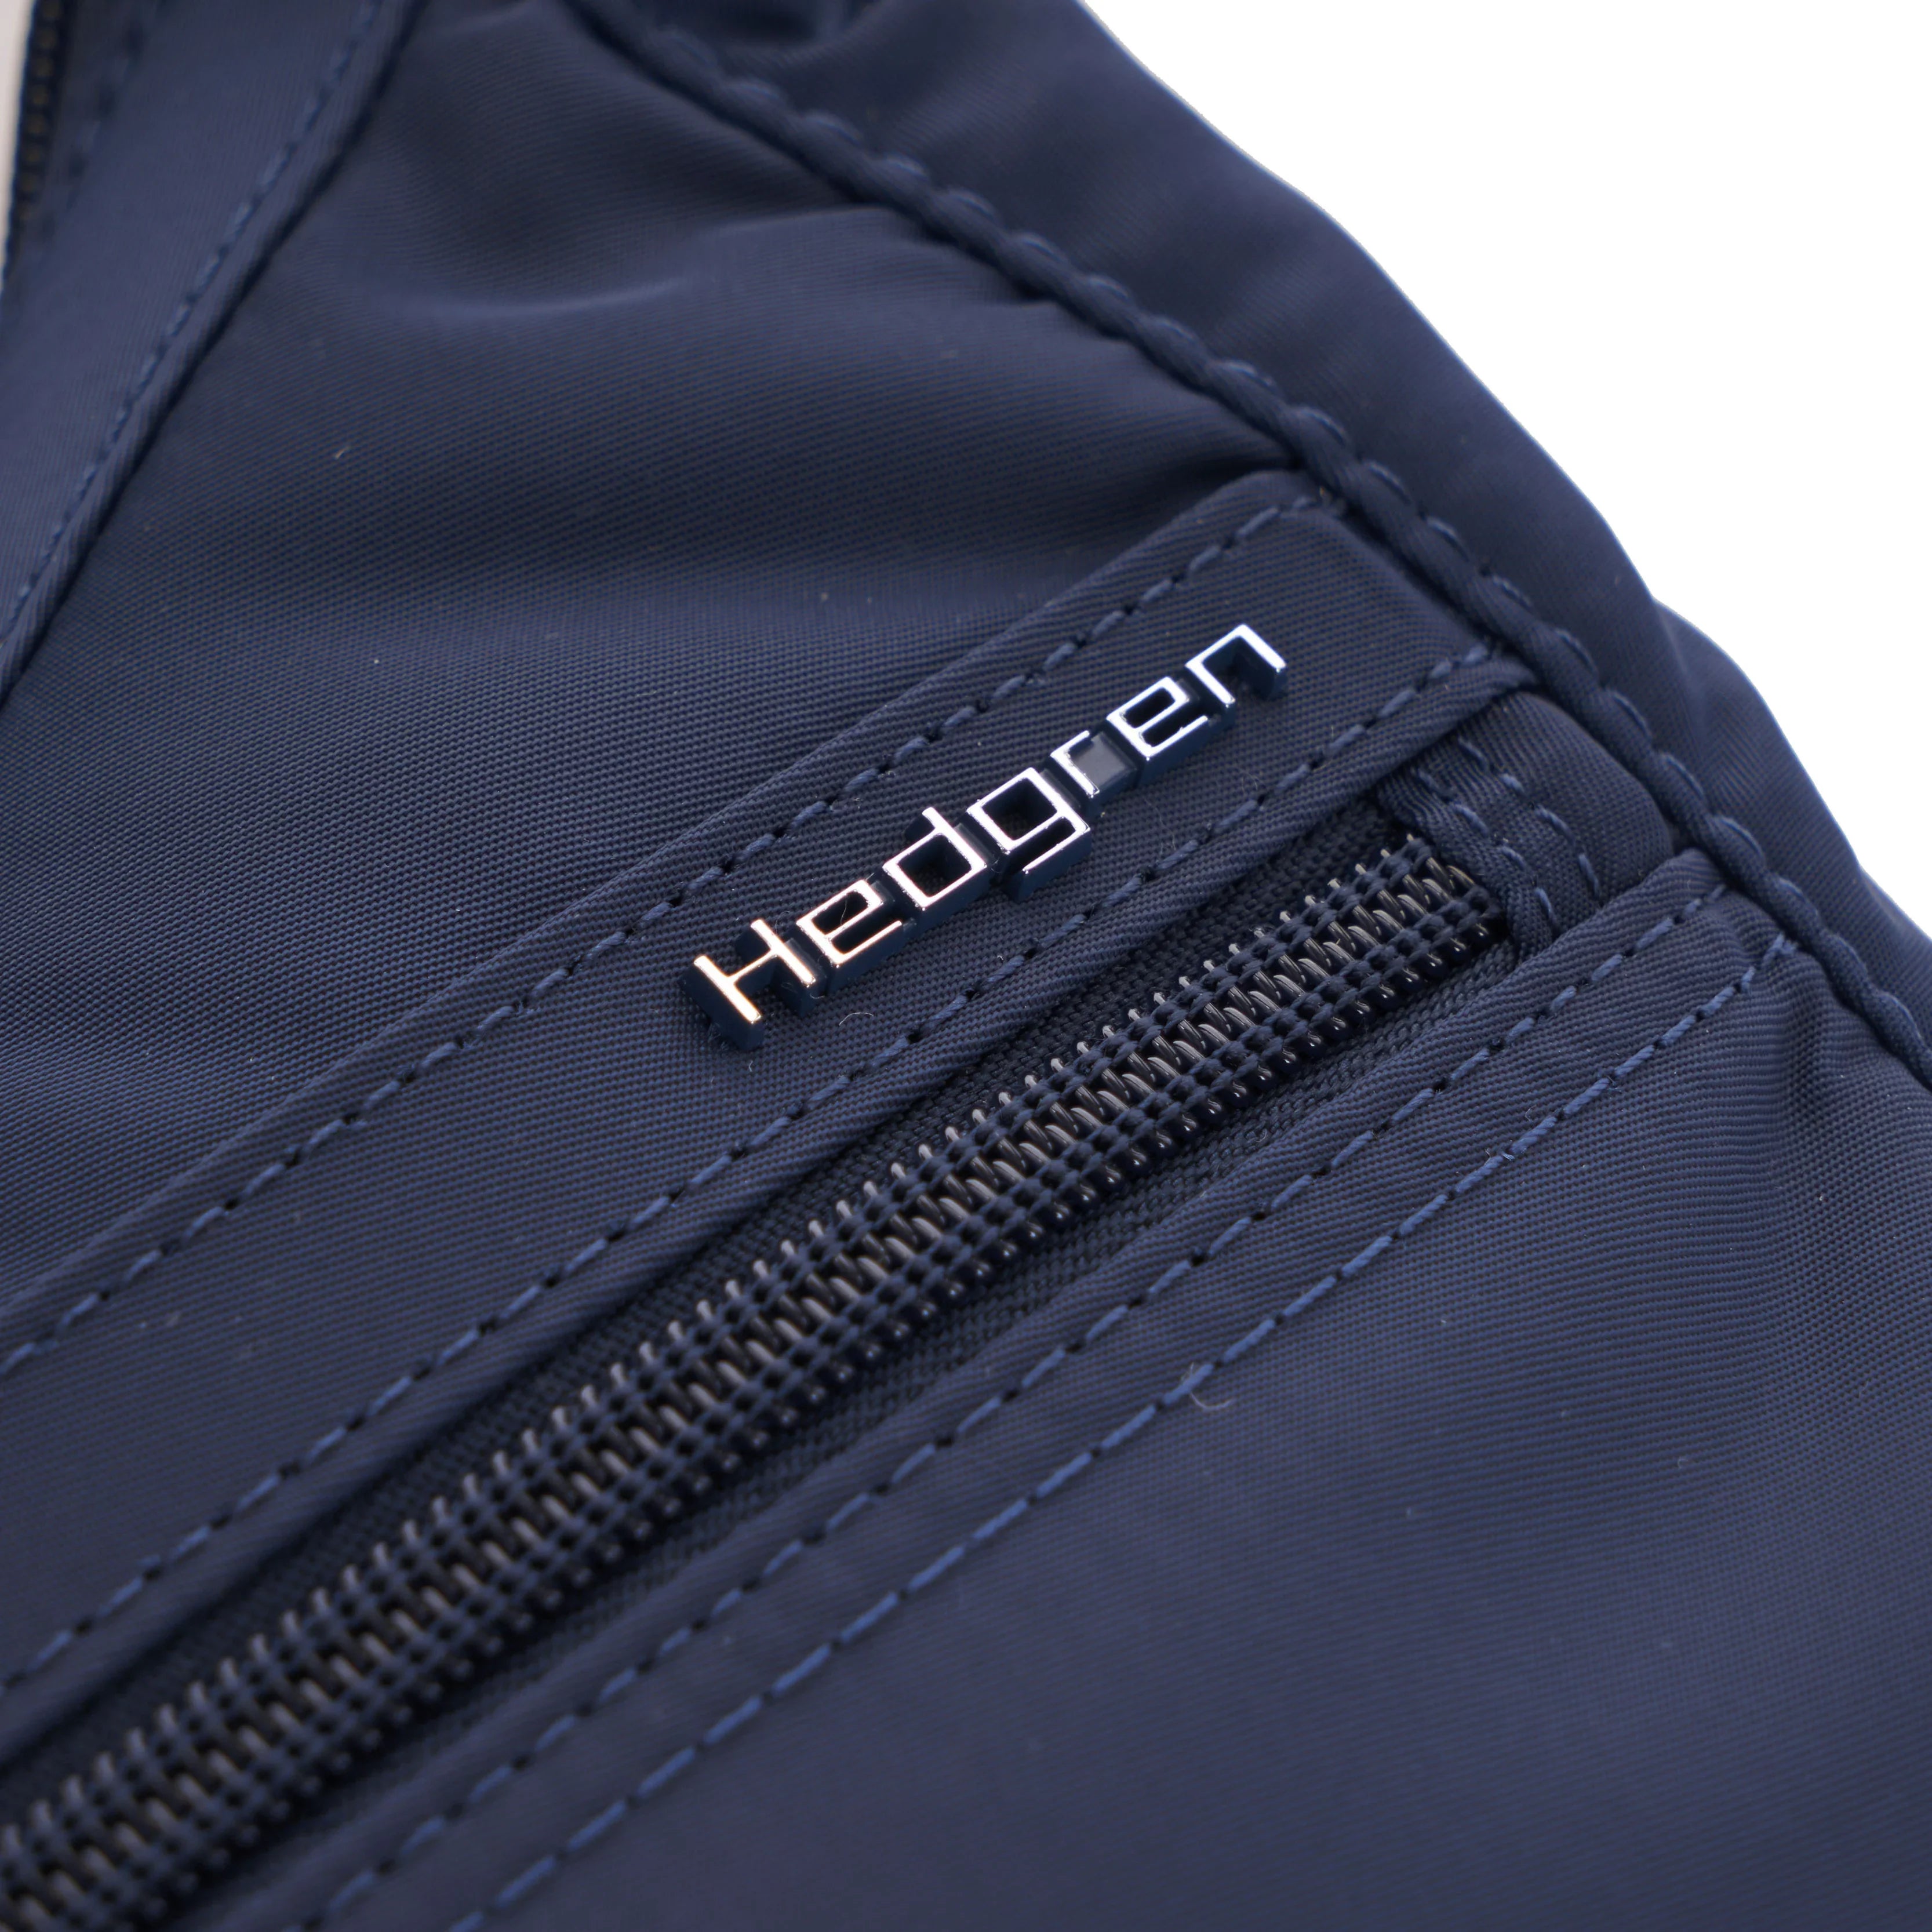 Hedgren Inner City 2 Harpers S shoulder bag RFID 28 cm - Black